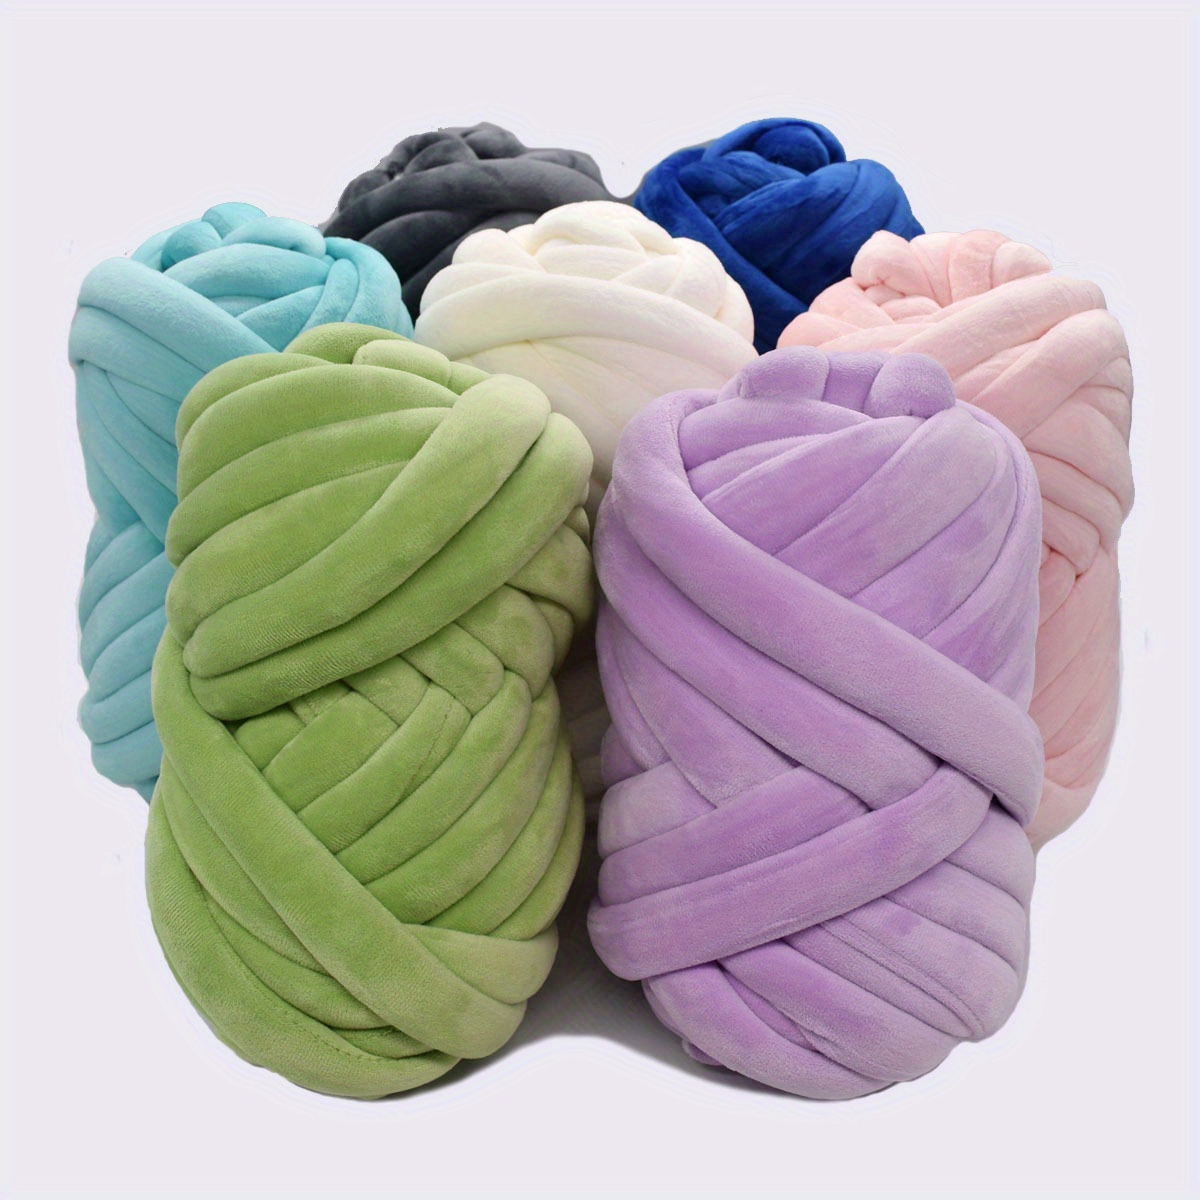 Buy Beige Chenille Chunky Yarn 250g/0.55lb Hand Knitting Yarn